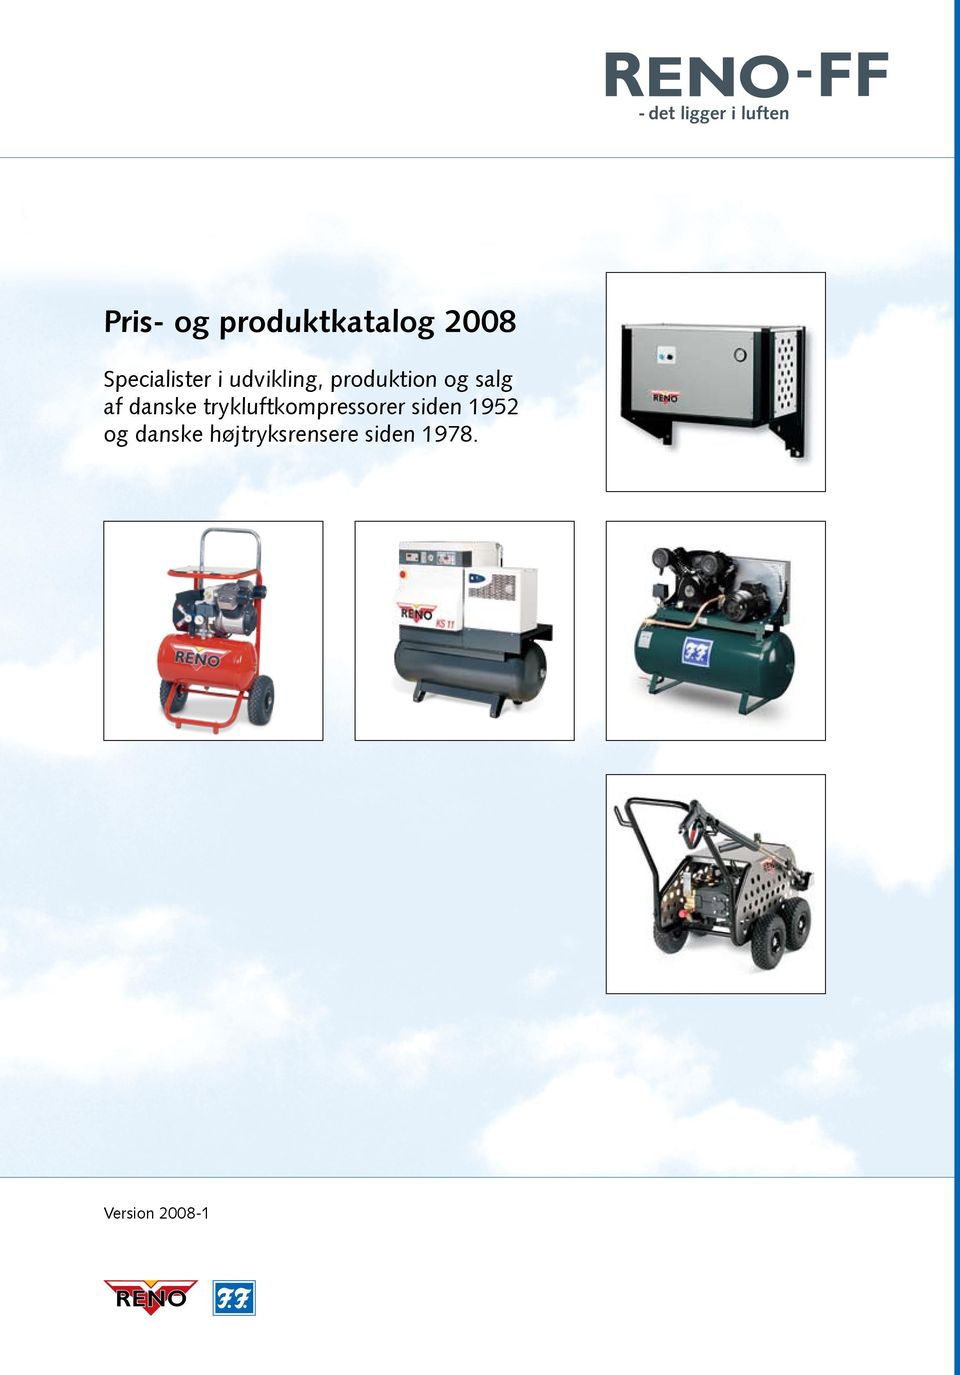 trykluftkompressorer siden 1952 og danske